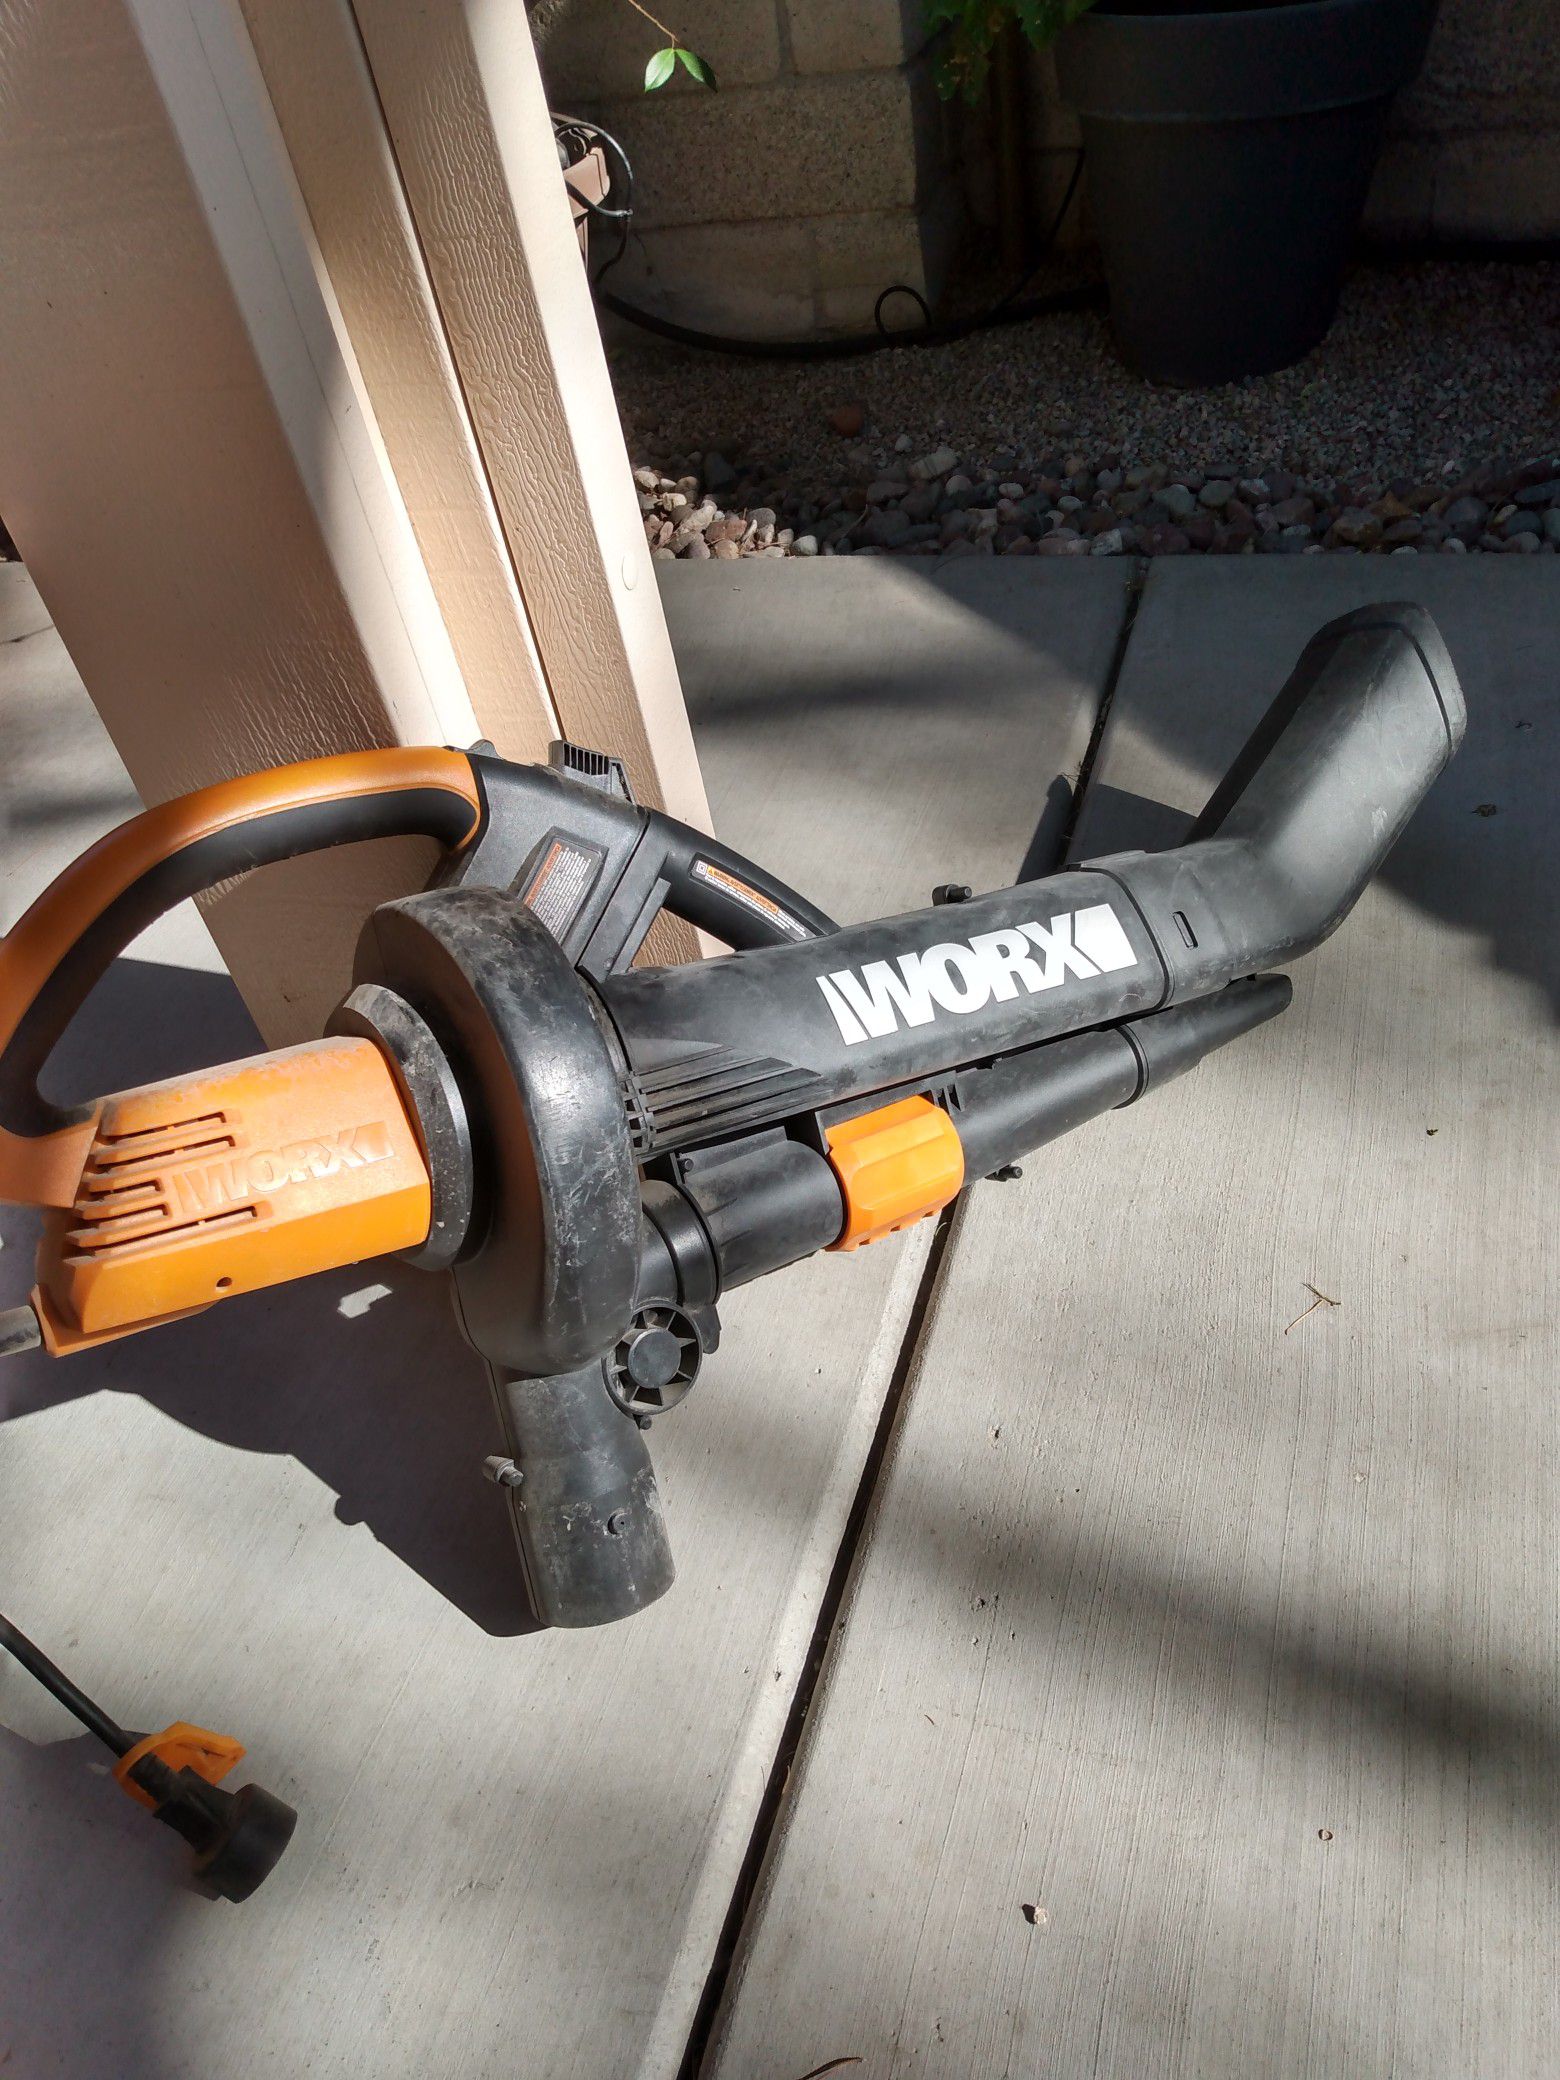 Worx leaf blower, yard vacuum, mulcher